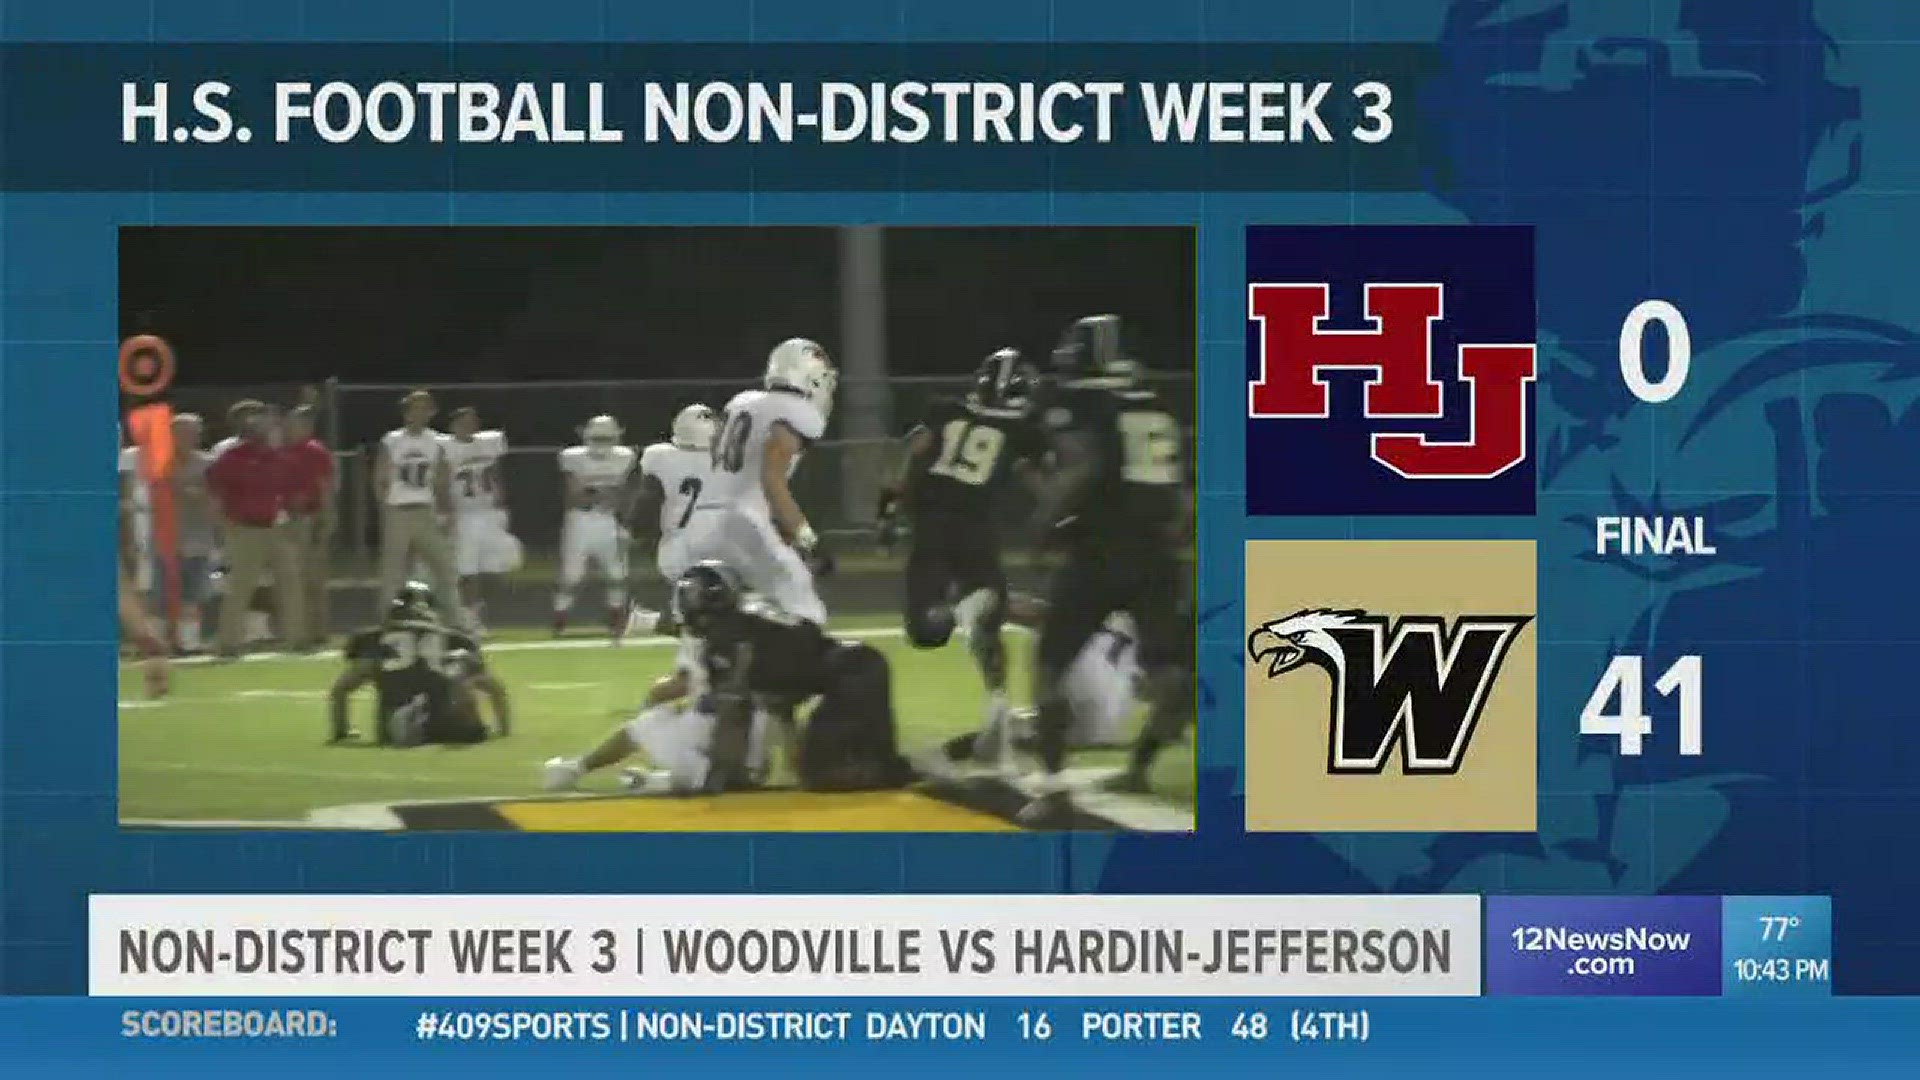 Week 3: Woodville High School obliterates Hardin-Jefferson 41 - 0